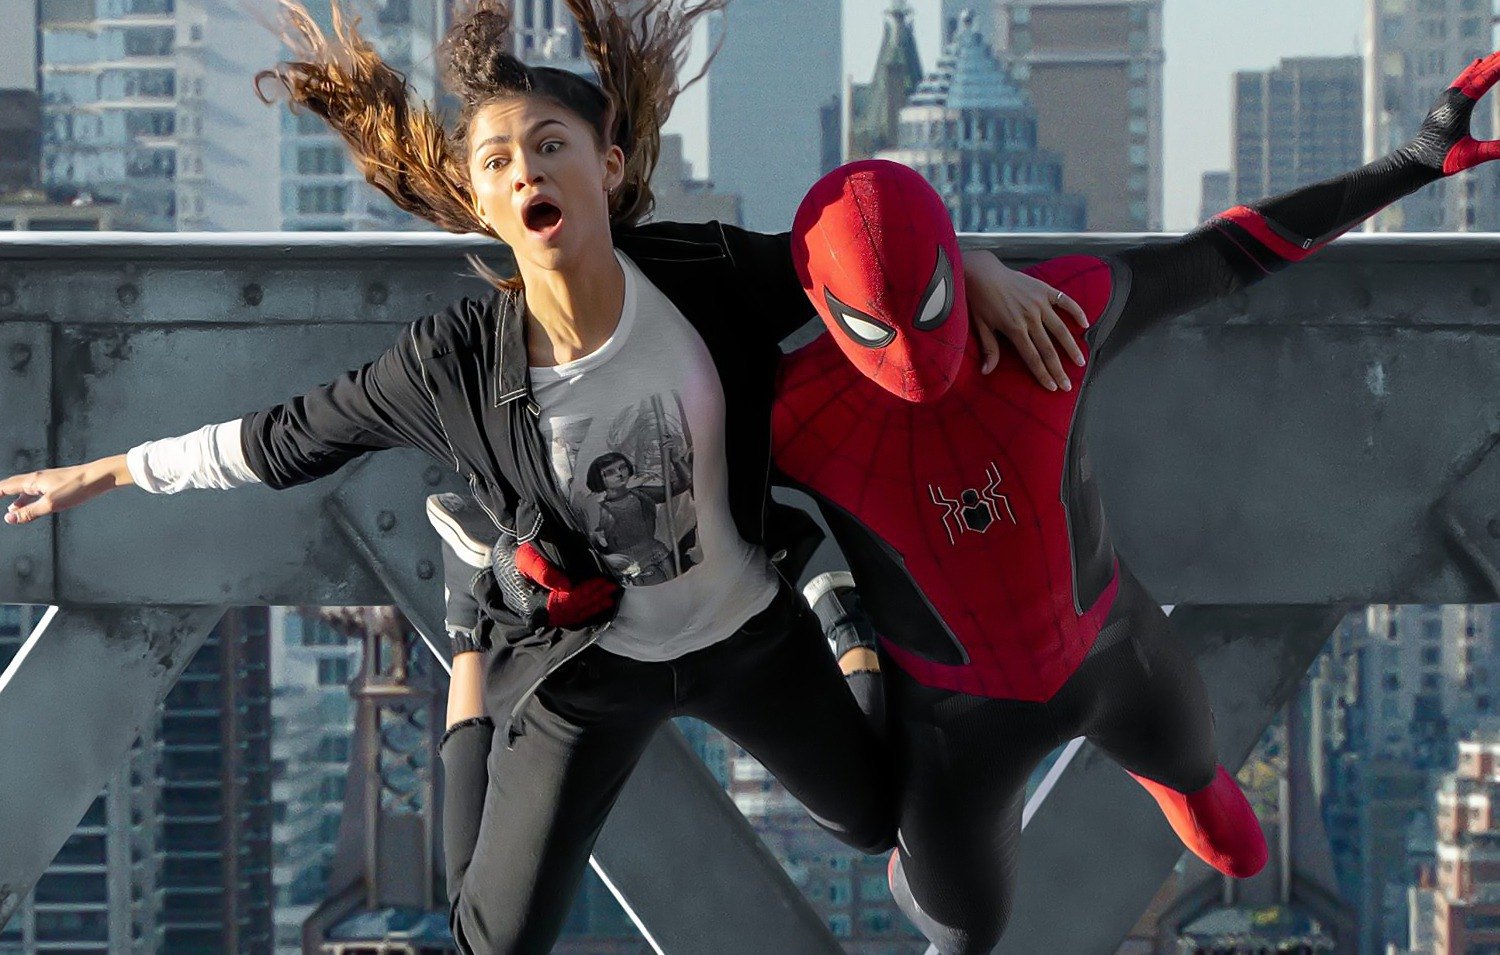 SpiderMan: No Way Home versión extendida, estreno el jueves 8 de diciembre en Movistar Plus+